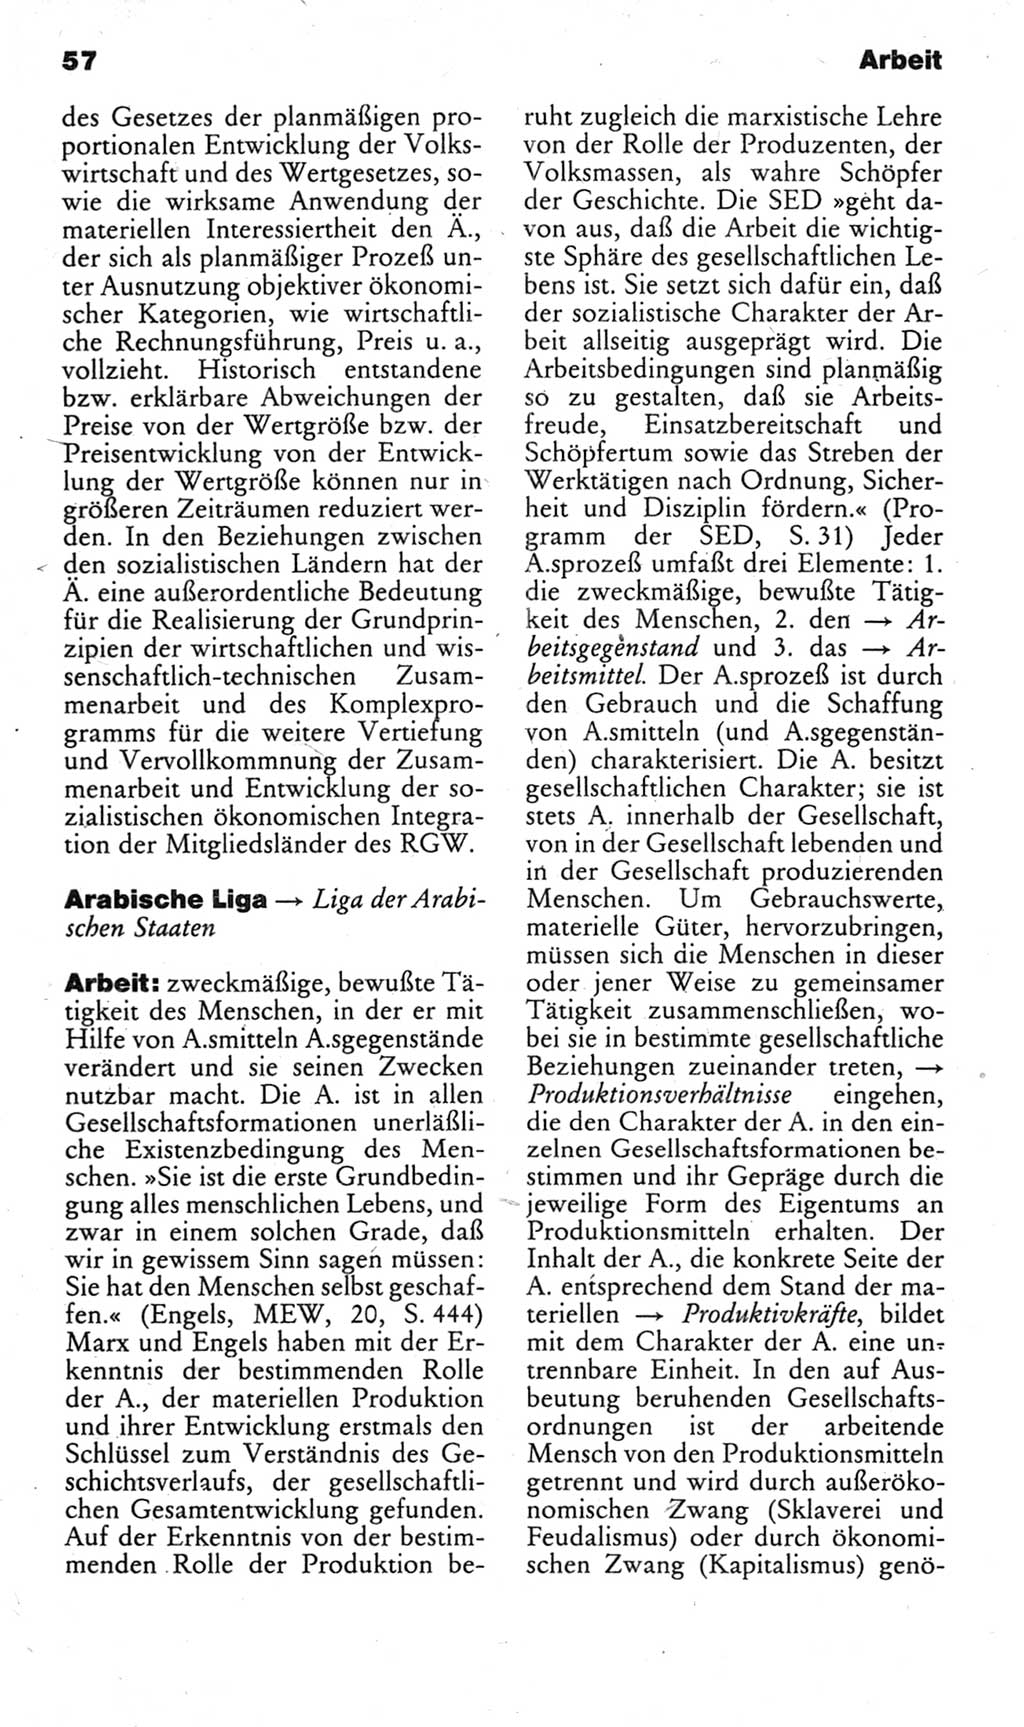 Kleines politisches Wörterbuch [Deutsche Demokratische Republik (DDR)] 1983, Seite 57 (Kl. pol. Wb. DDR 1983, S. 57)